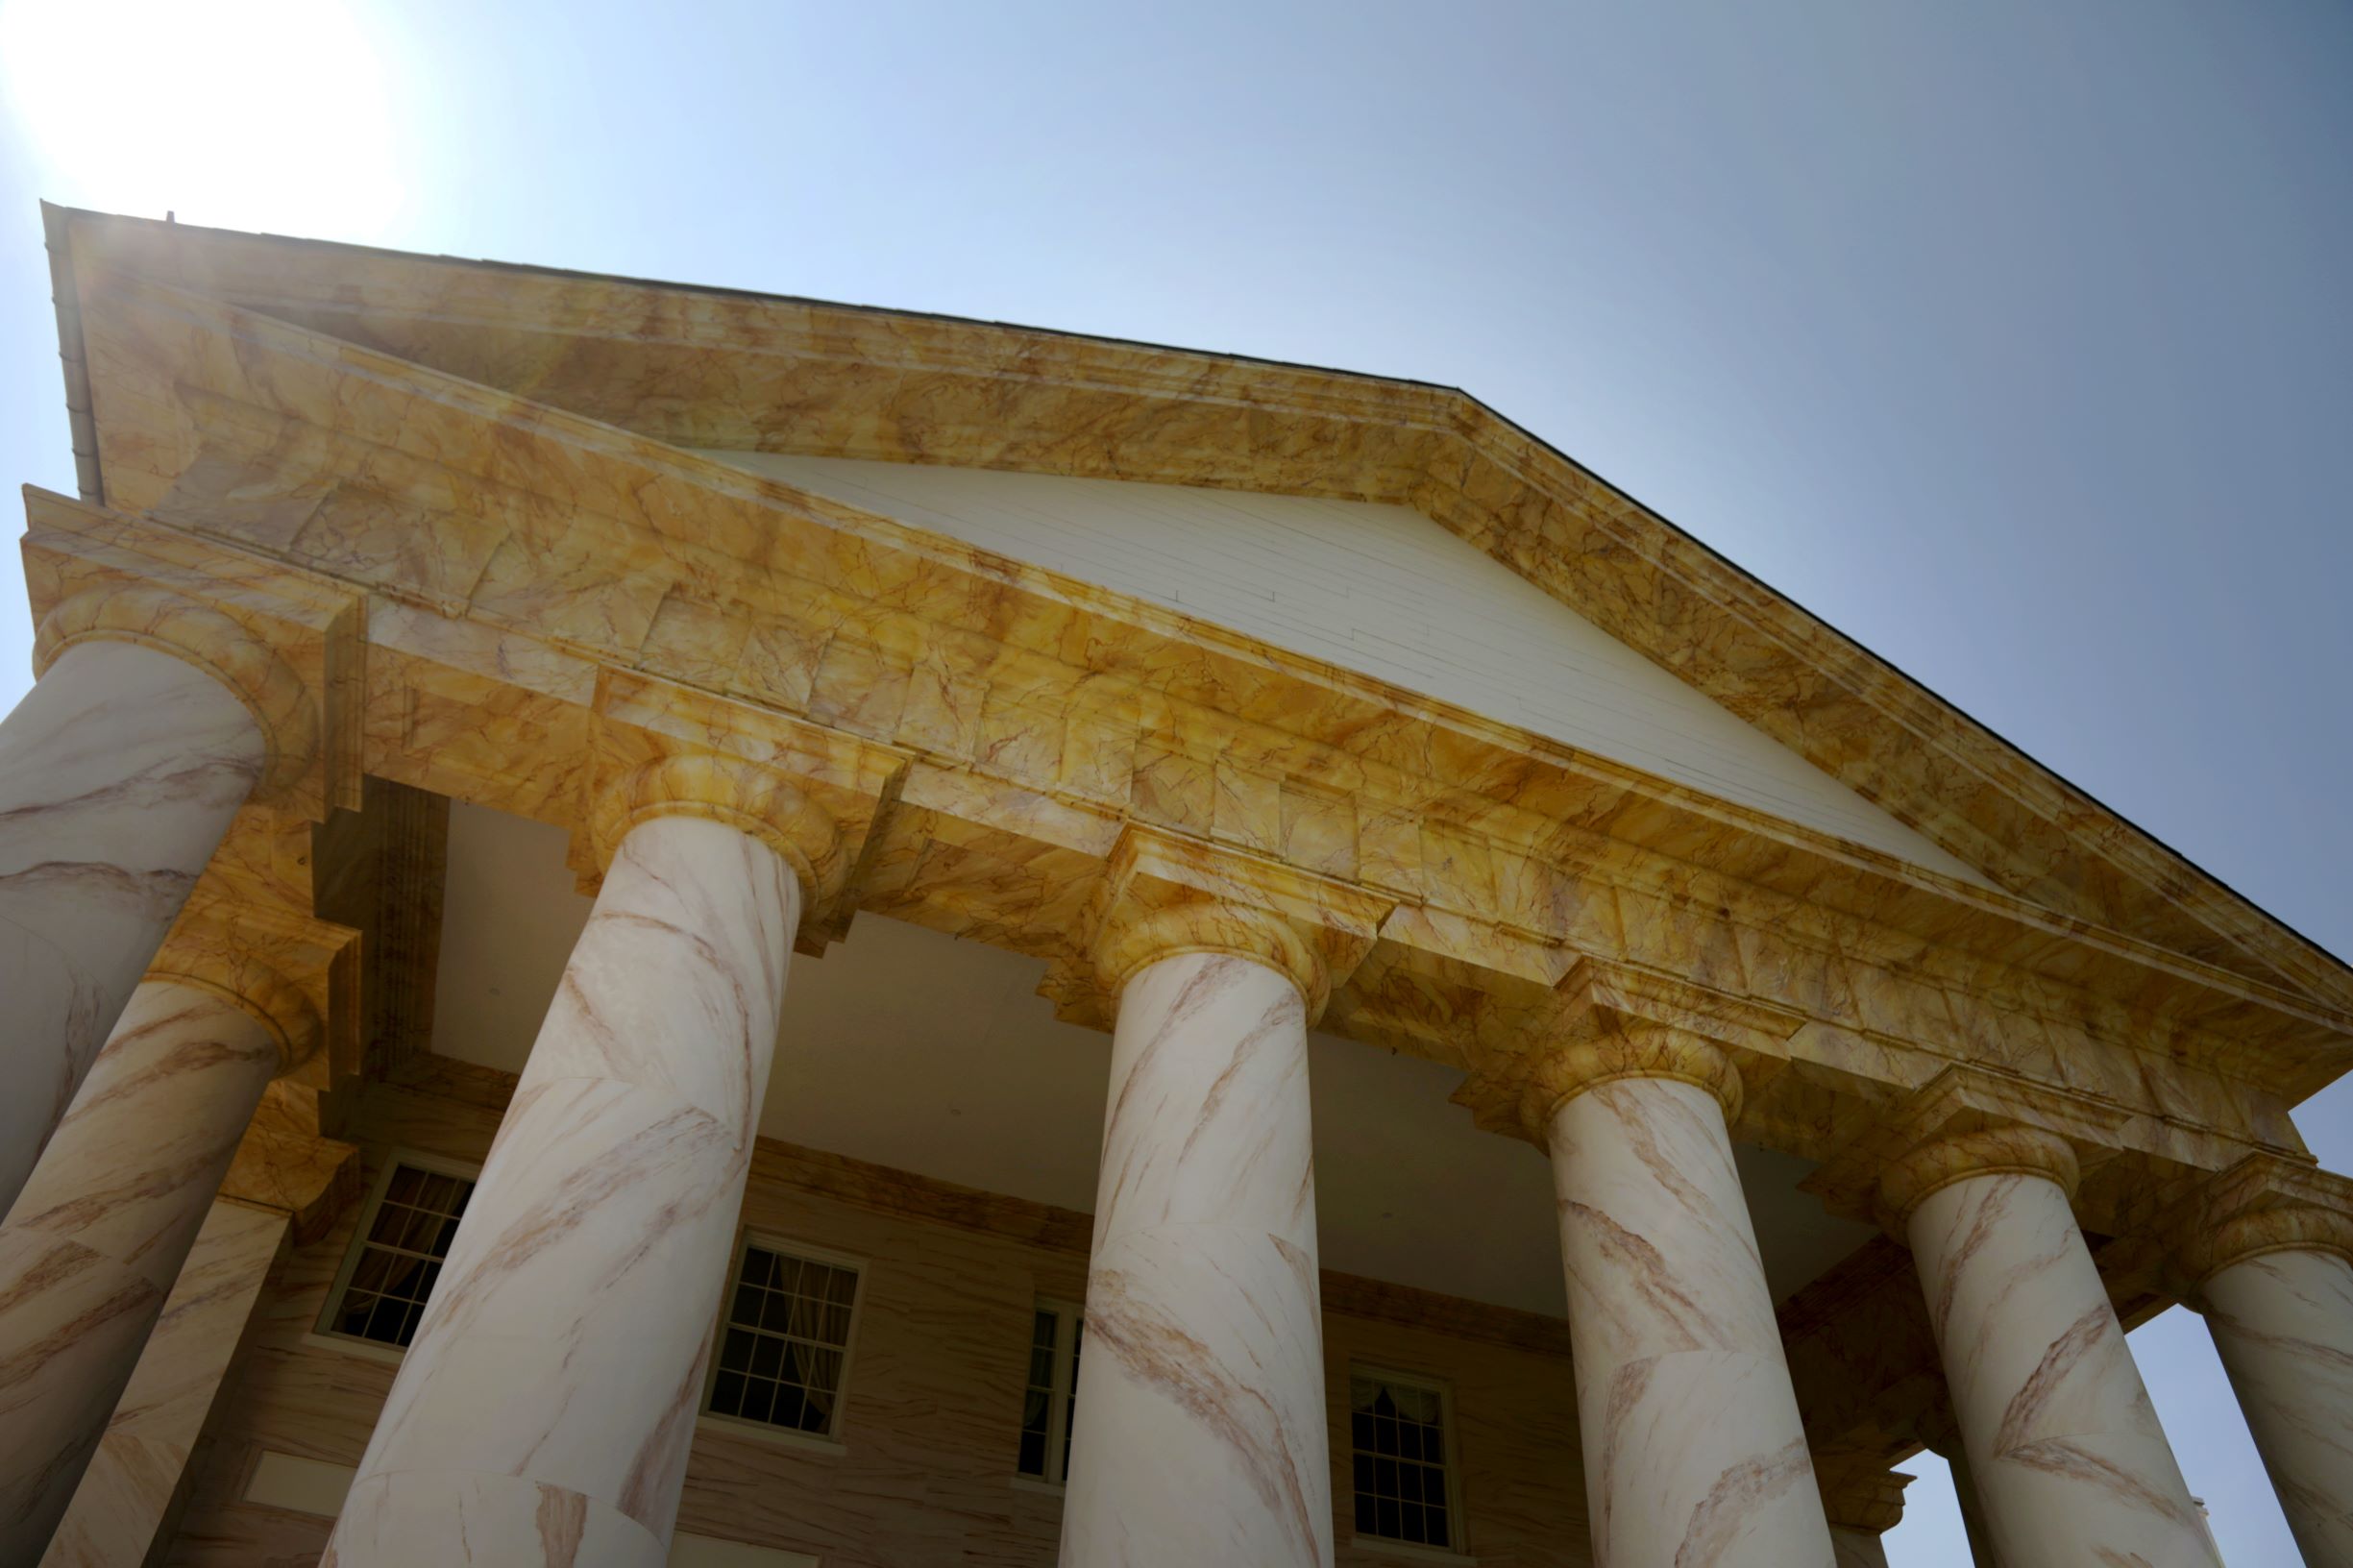 Portico of Arlington House, The Robert E. Lee Memorial